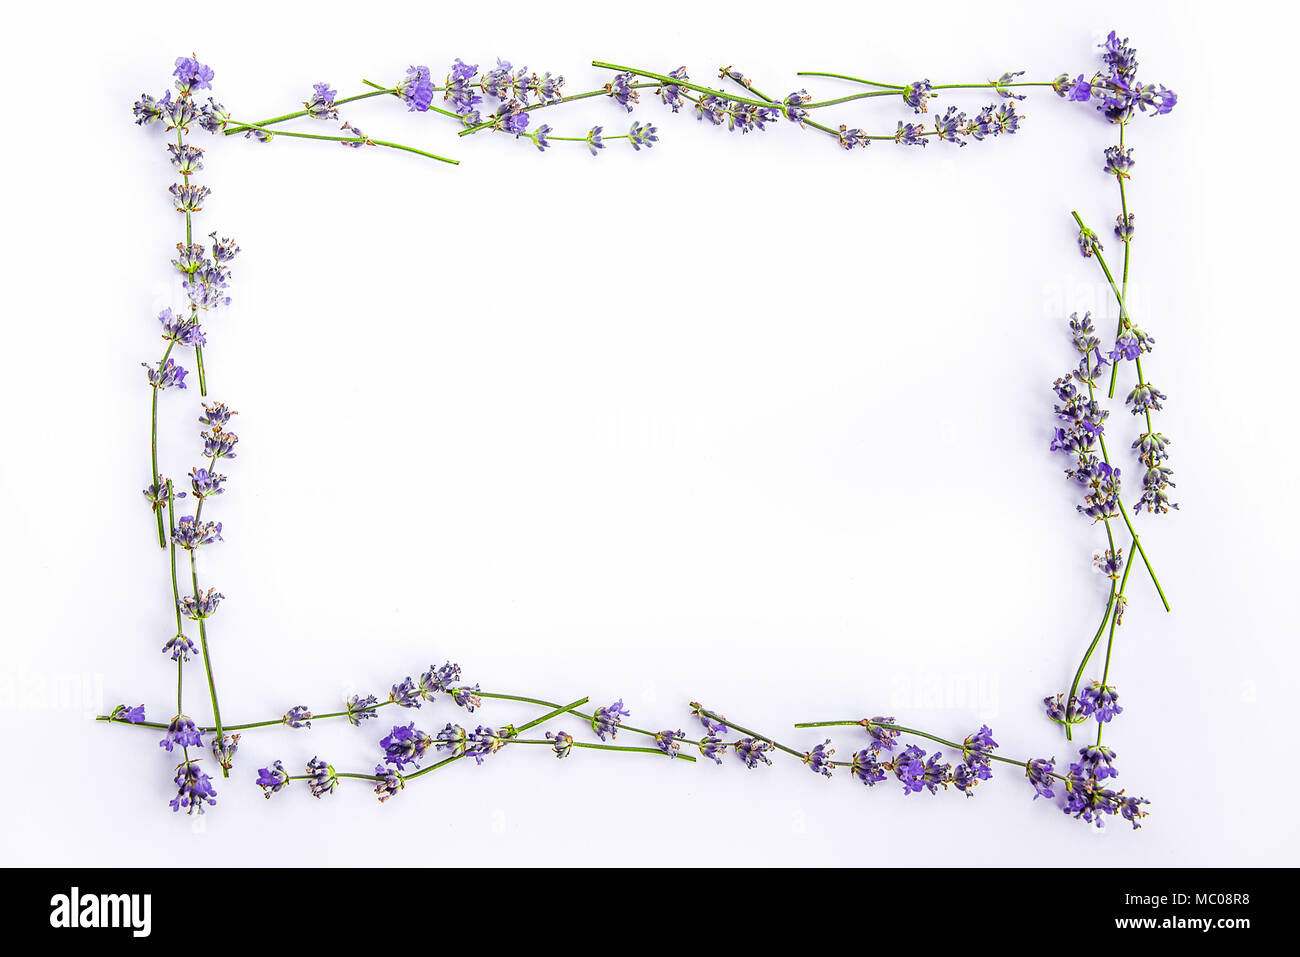 Ein Rahmen aus frischem Lavendel Blumen auf einem weißen Hintergrund. Lavendel Blumen mock up. Kopieren Sie Platz. Stockfoto